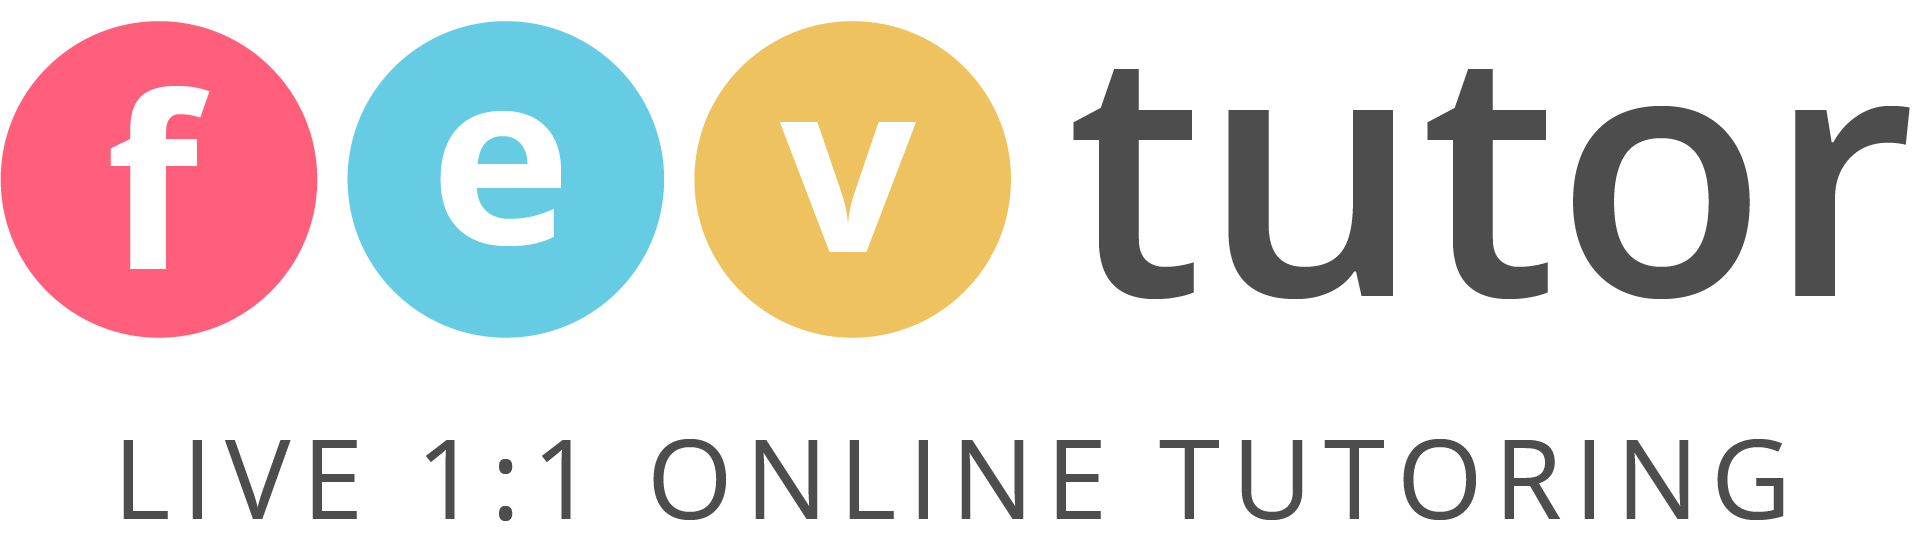 FEV Tutor Logo